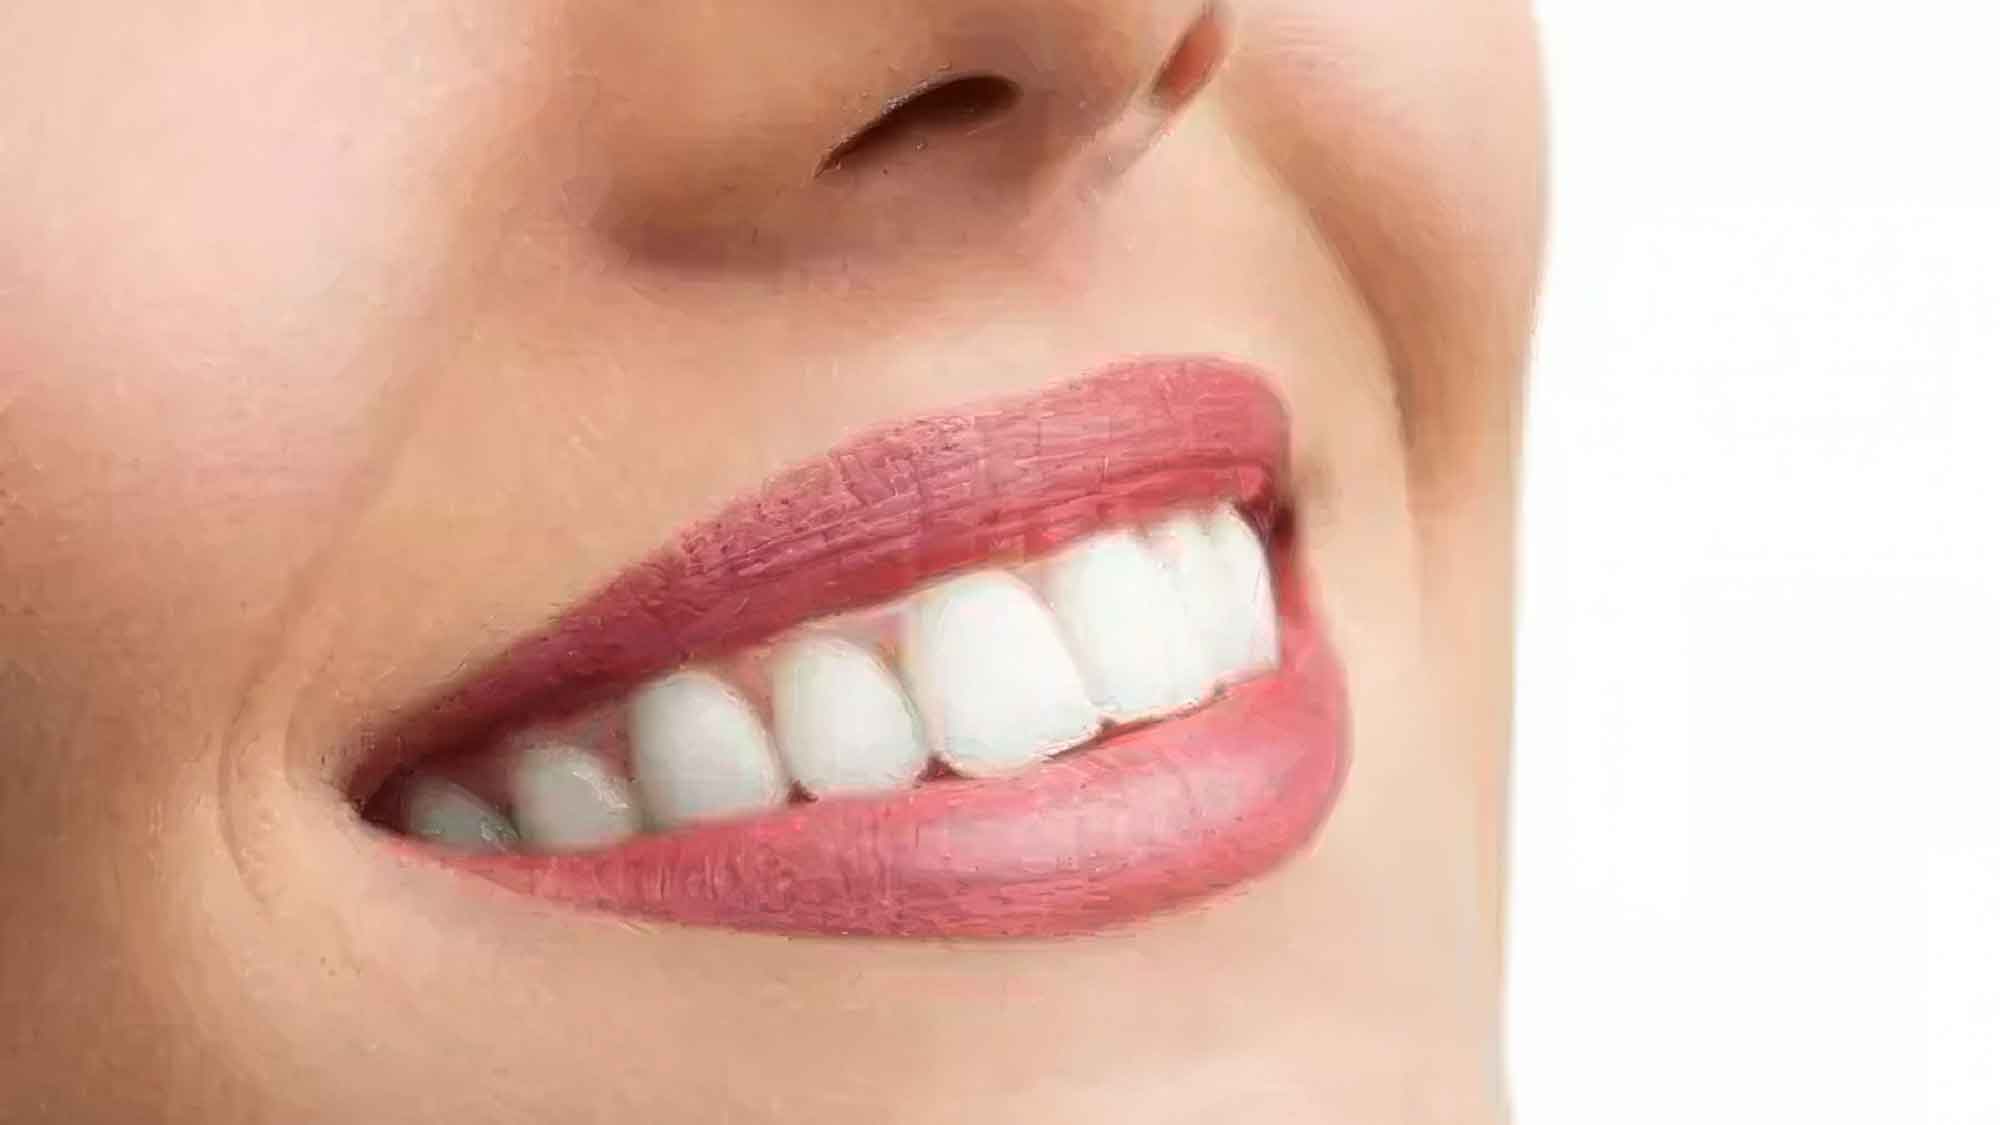 Schwarze Zahnpasta mit Aktivkohle – neuer Trend? Was sagt der Zahnarzt dazu?